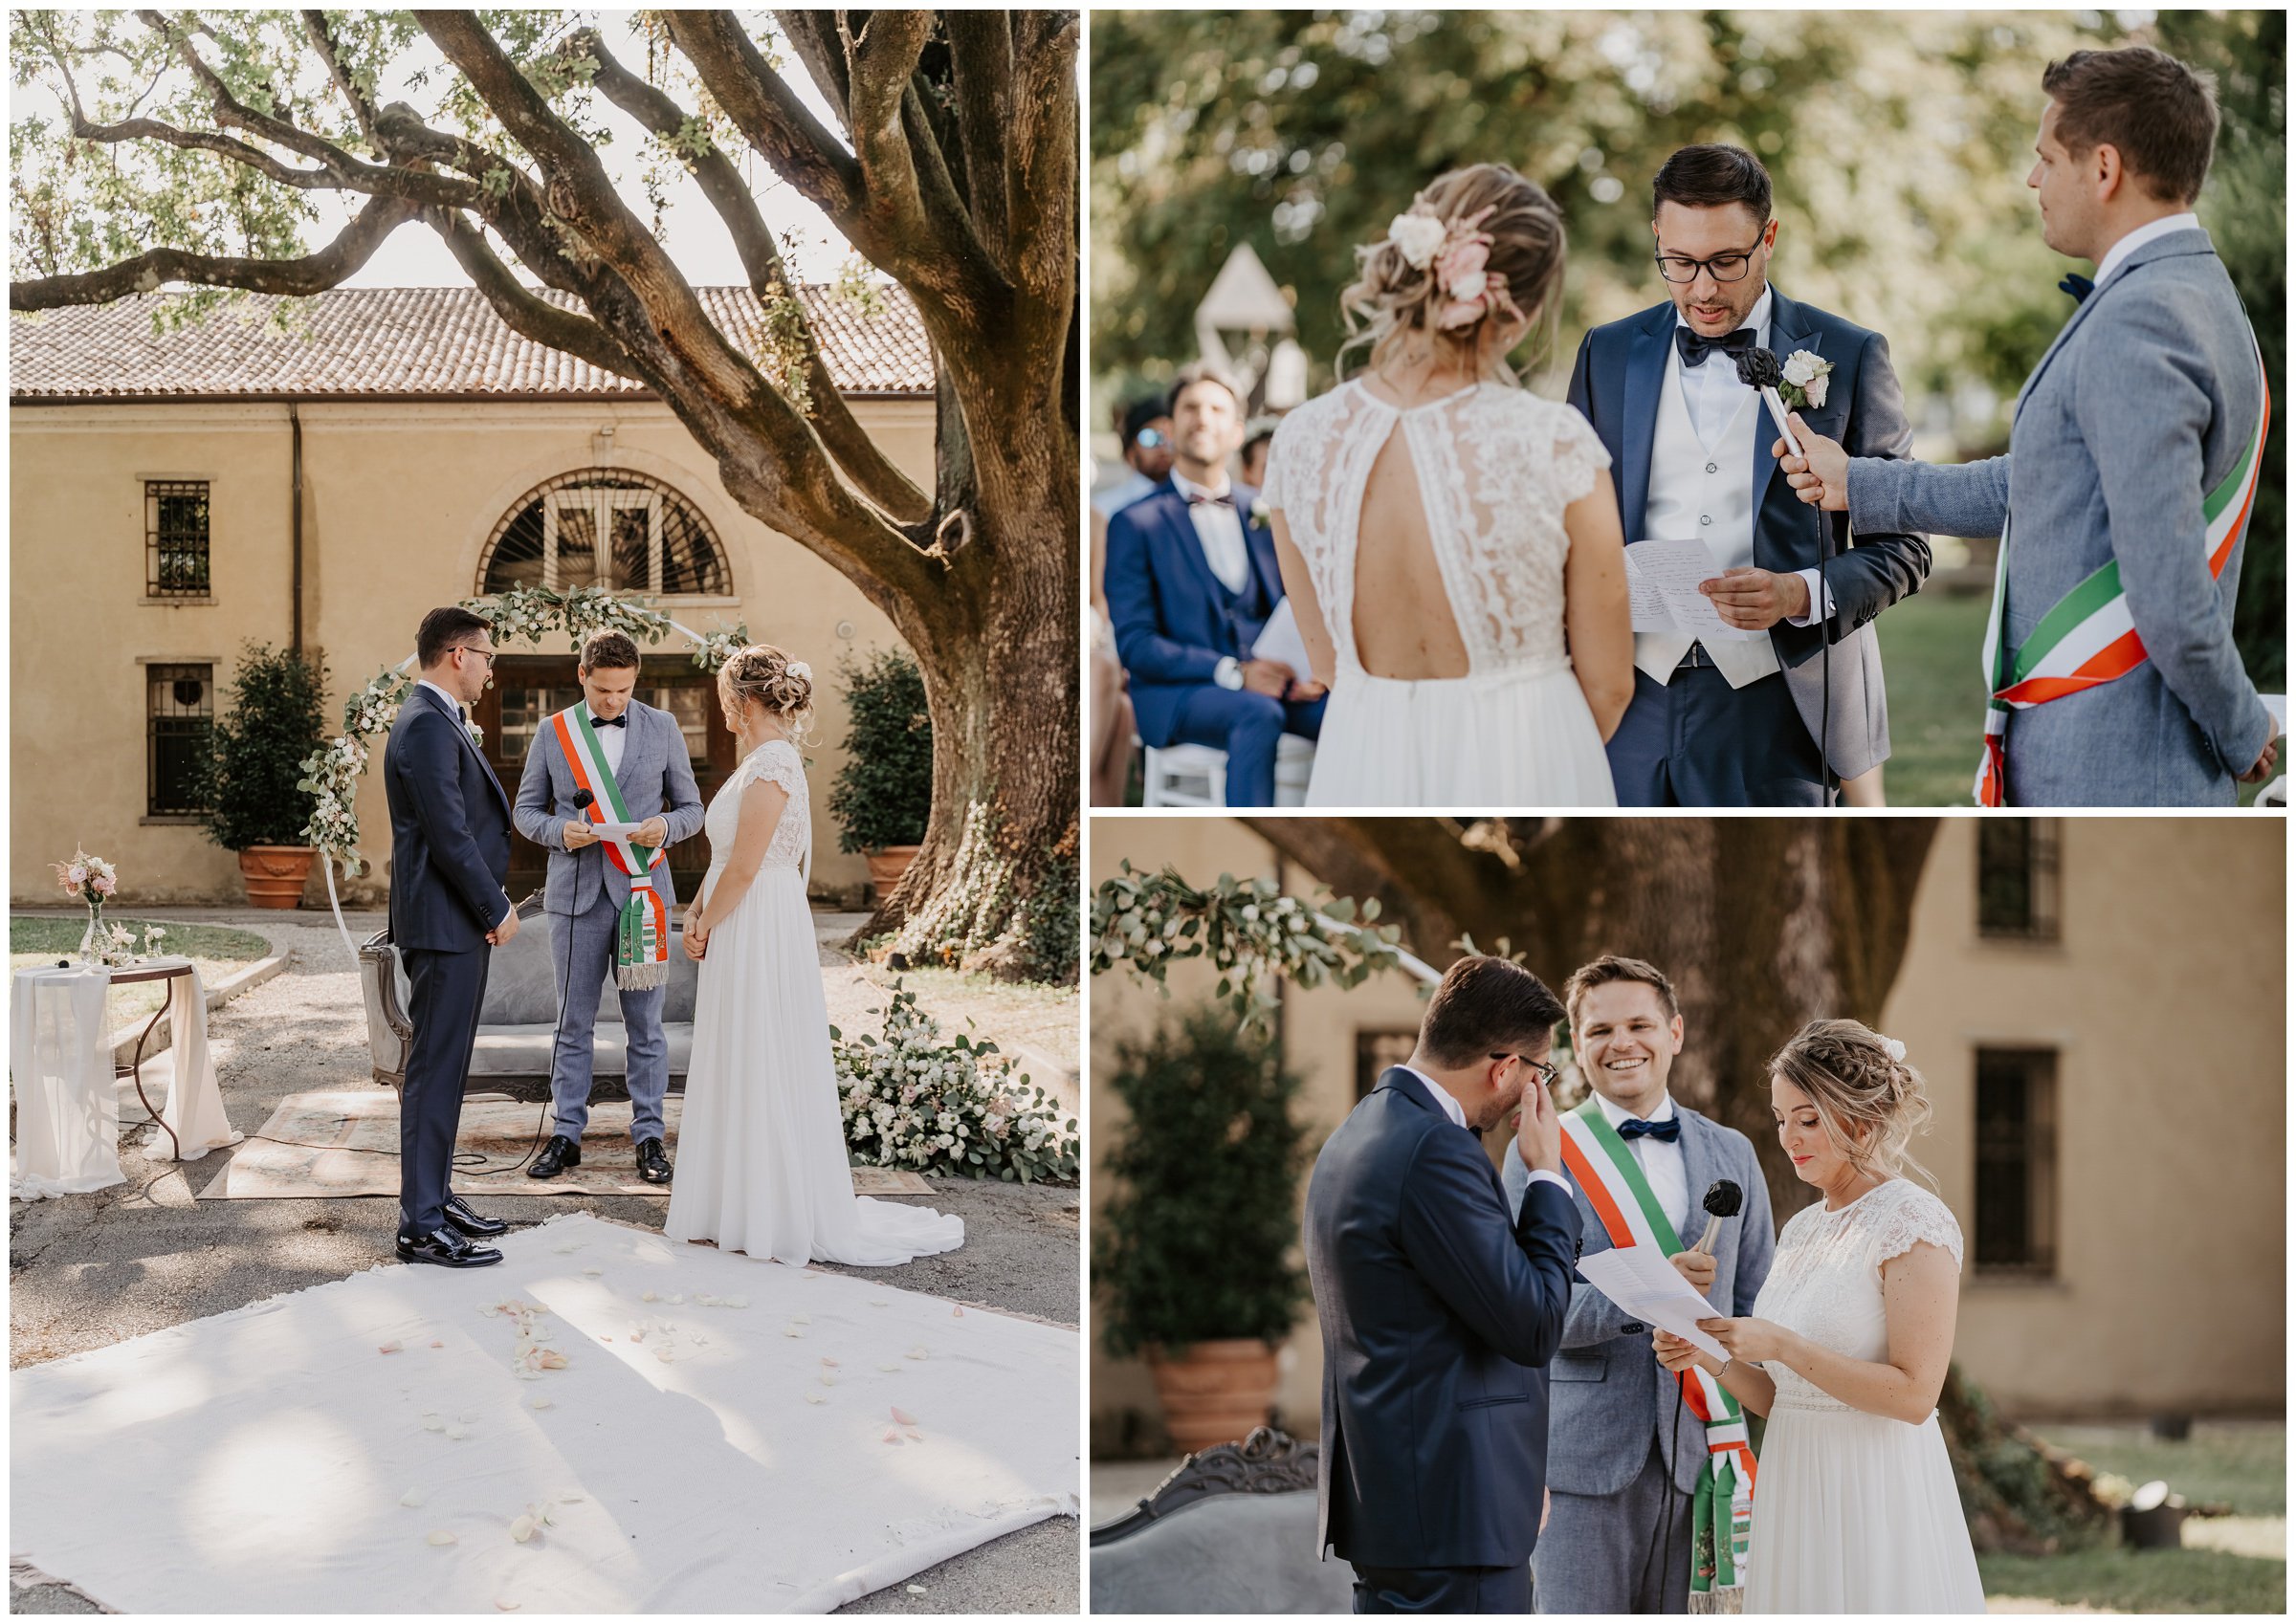 Matrimonio-villa-foscarini-cornaro-fotografo-matrimonio-treviso-fotografo-matrimonio-venezia-29.jpg